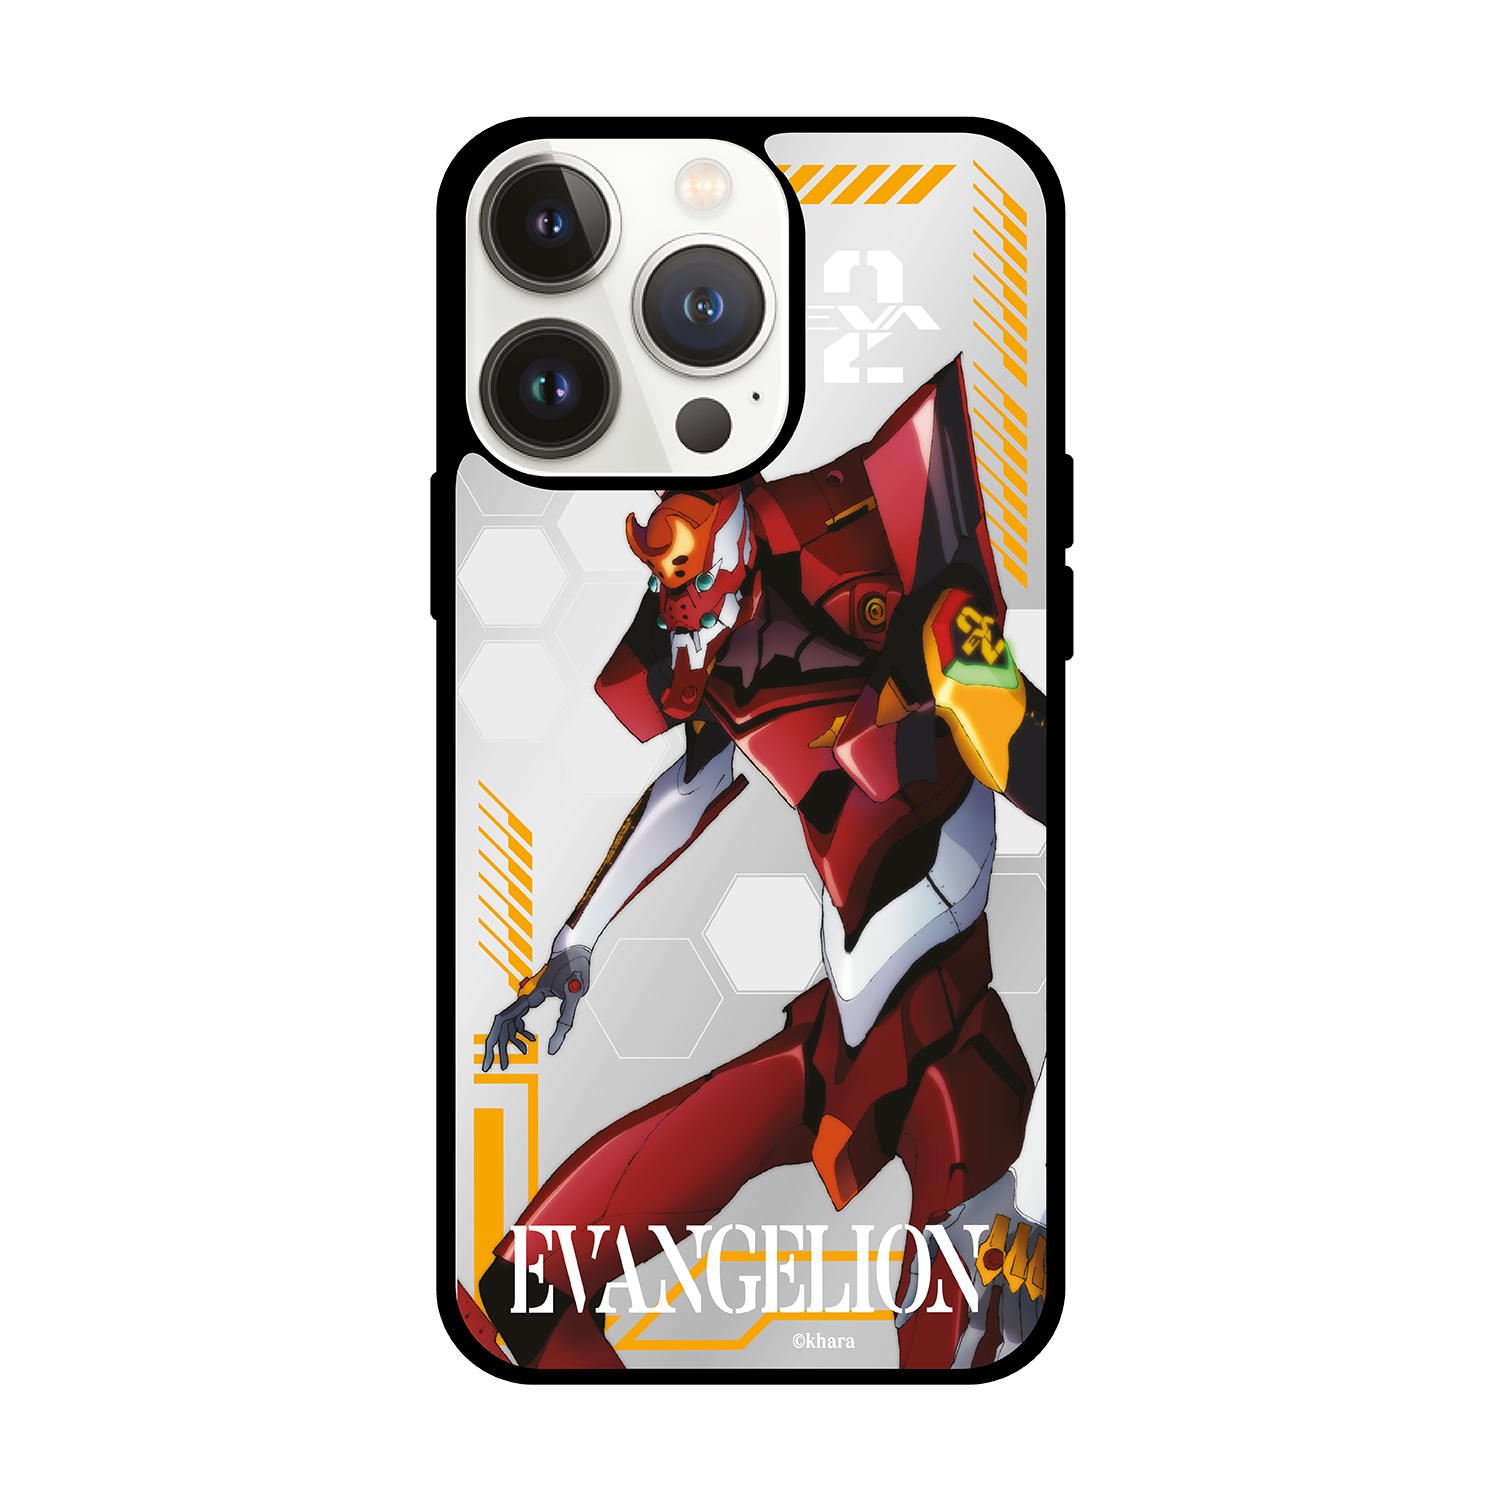 Evangelion 新世紀福音戰士 iPhone Mirror Case / Samsung Mirror Case (M-EVA-02)